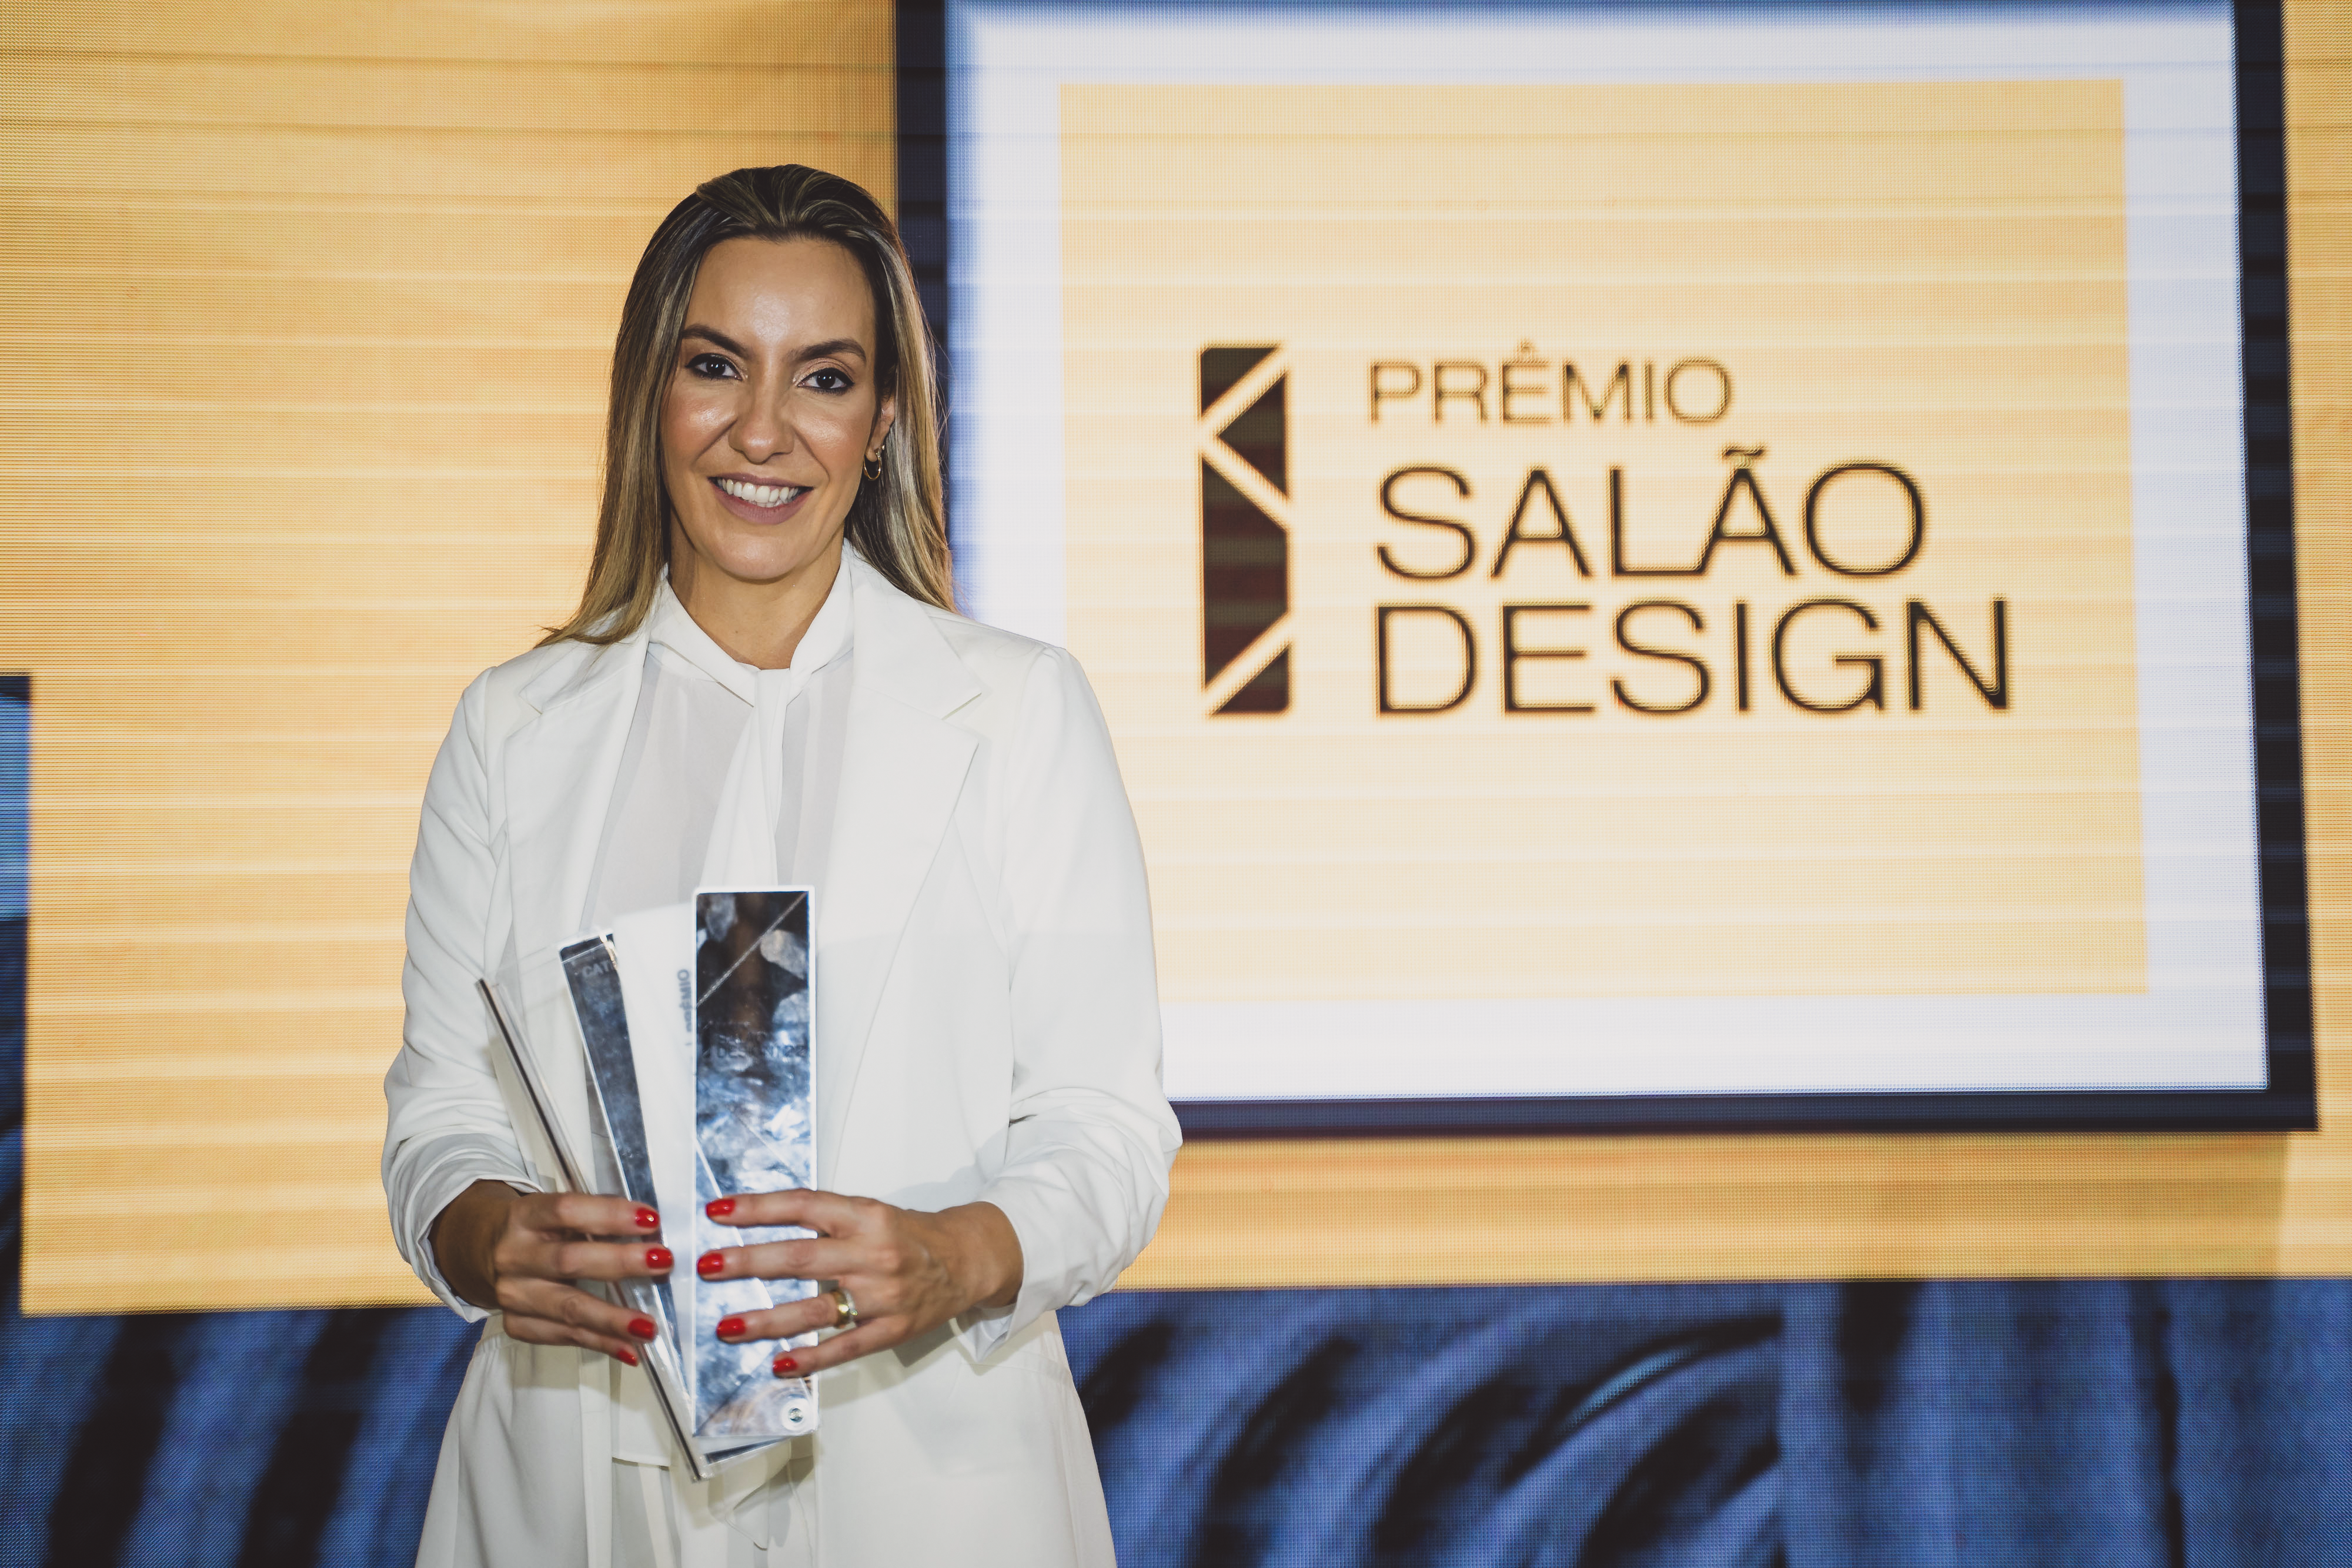 Studio Marta Manente recebe Prêmio Salão Design na categoria “Desafio da Tecnologia Embutida” com o sofá Maré